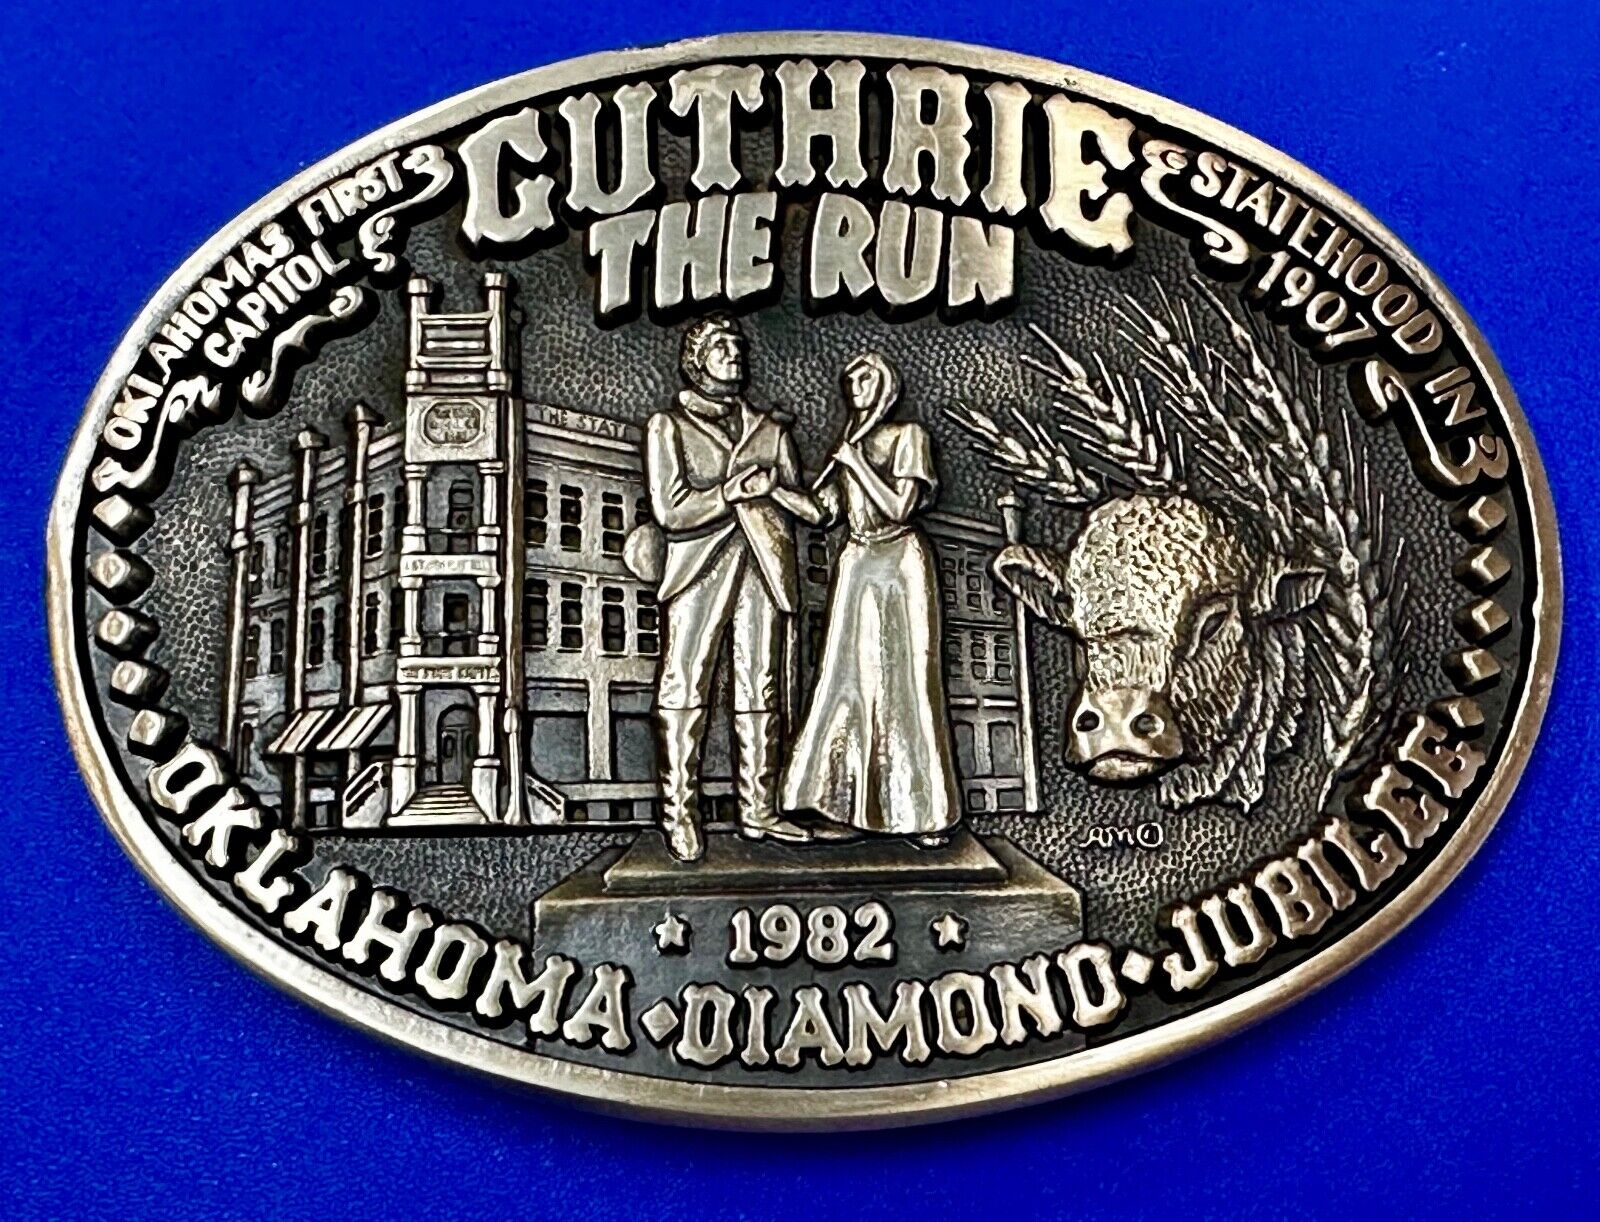 Guthrie The Run Statehood Oklahoma Diamond Jubilee 1982 Vintage Belt Buckle